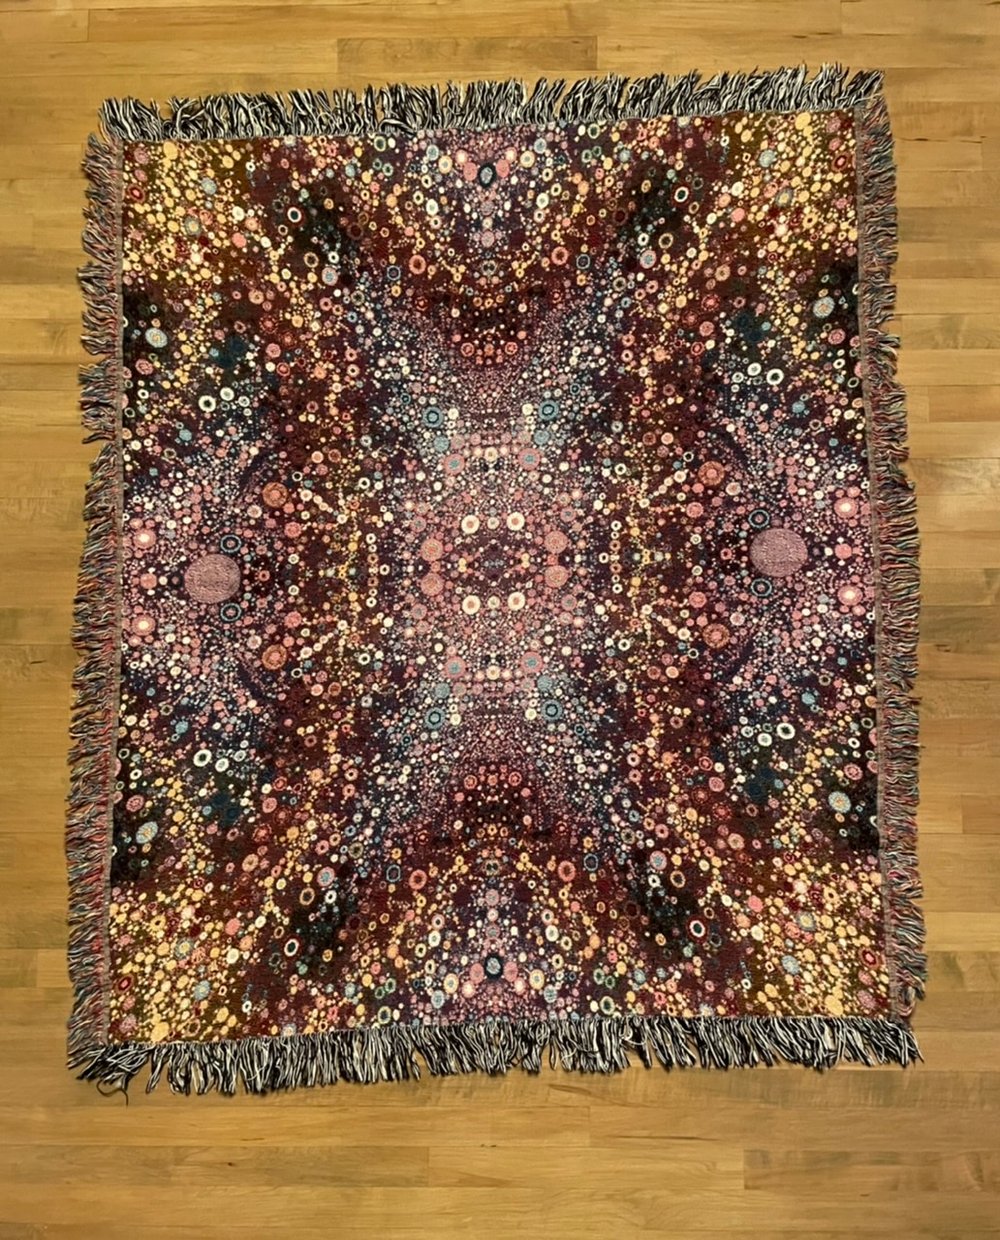 Sample Blanket #36